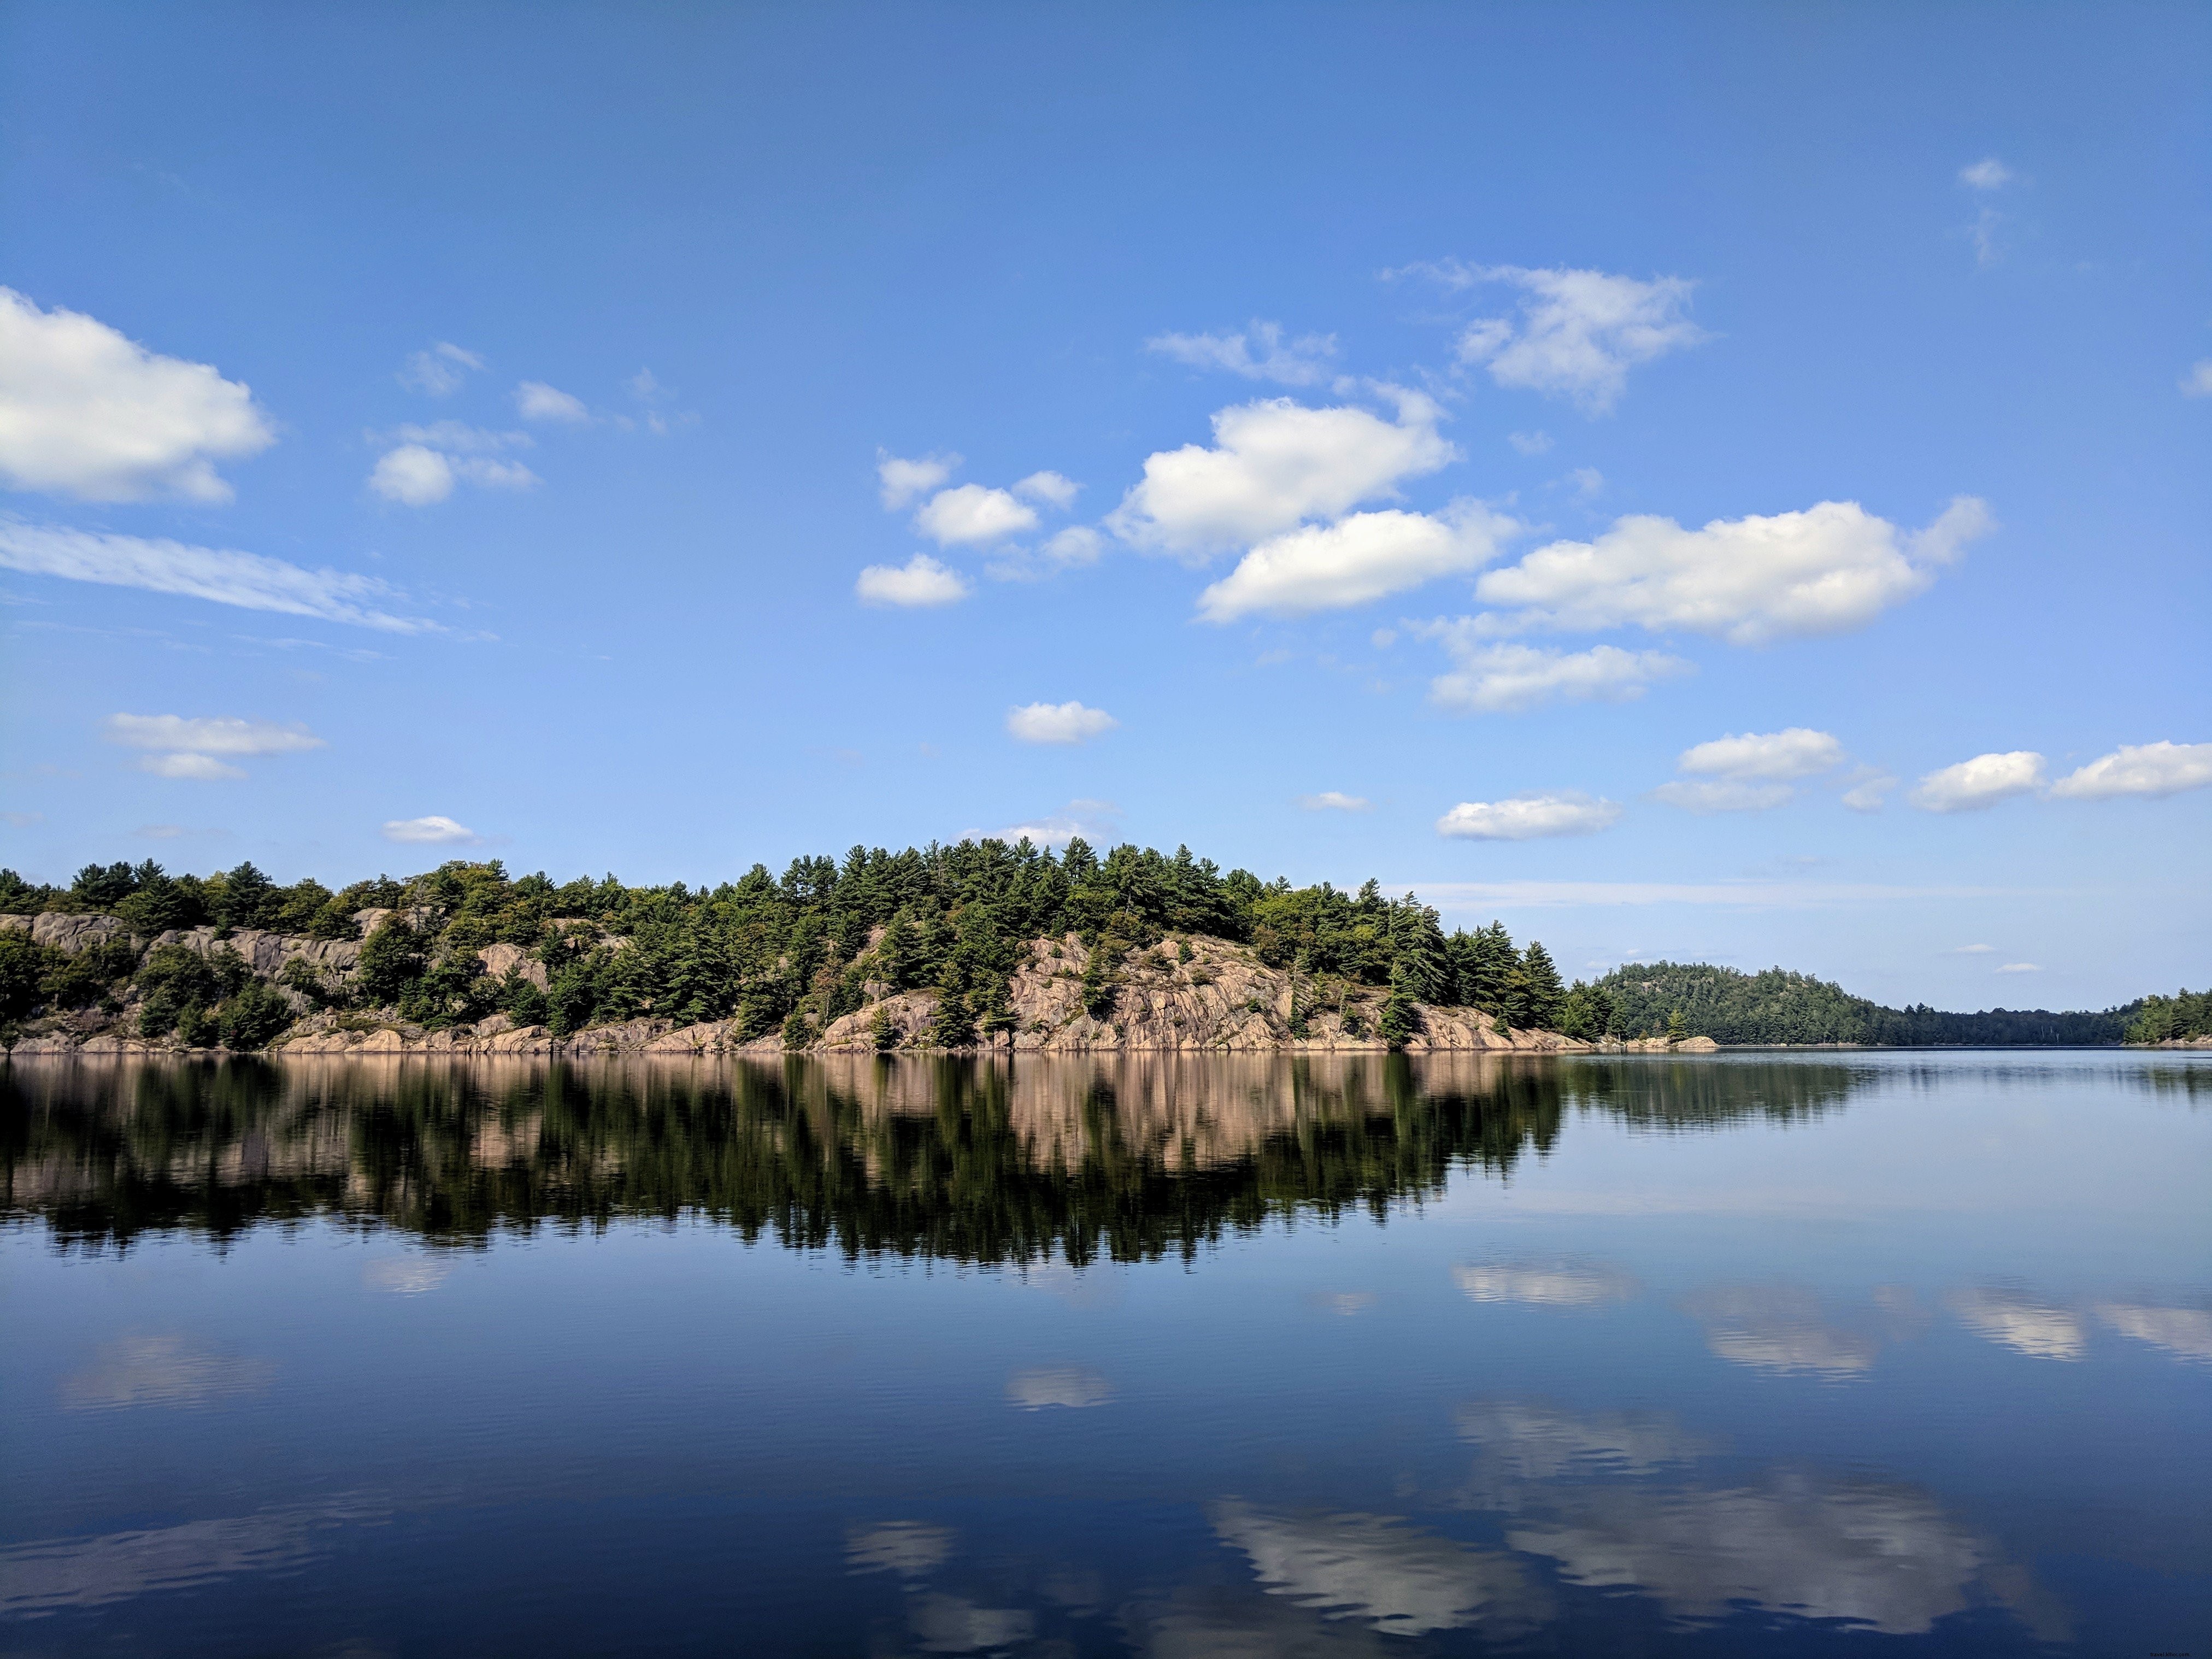 Reflet de rochers et d arbres sur le lac Photo